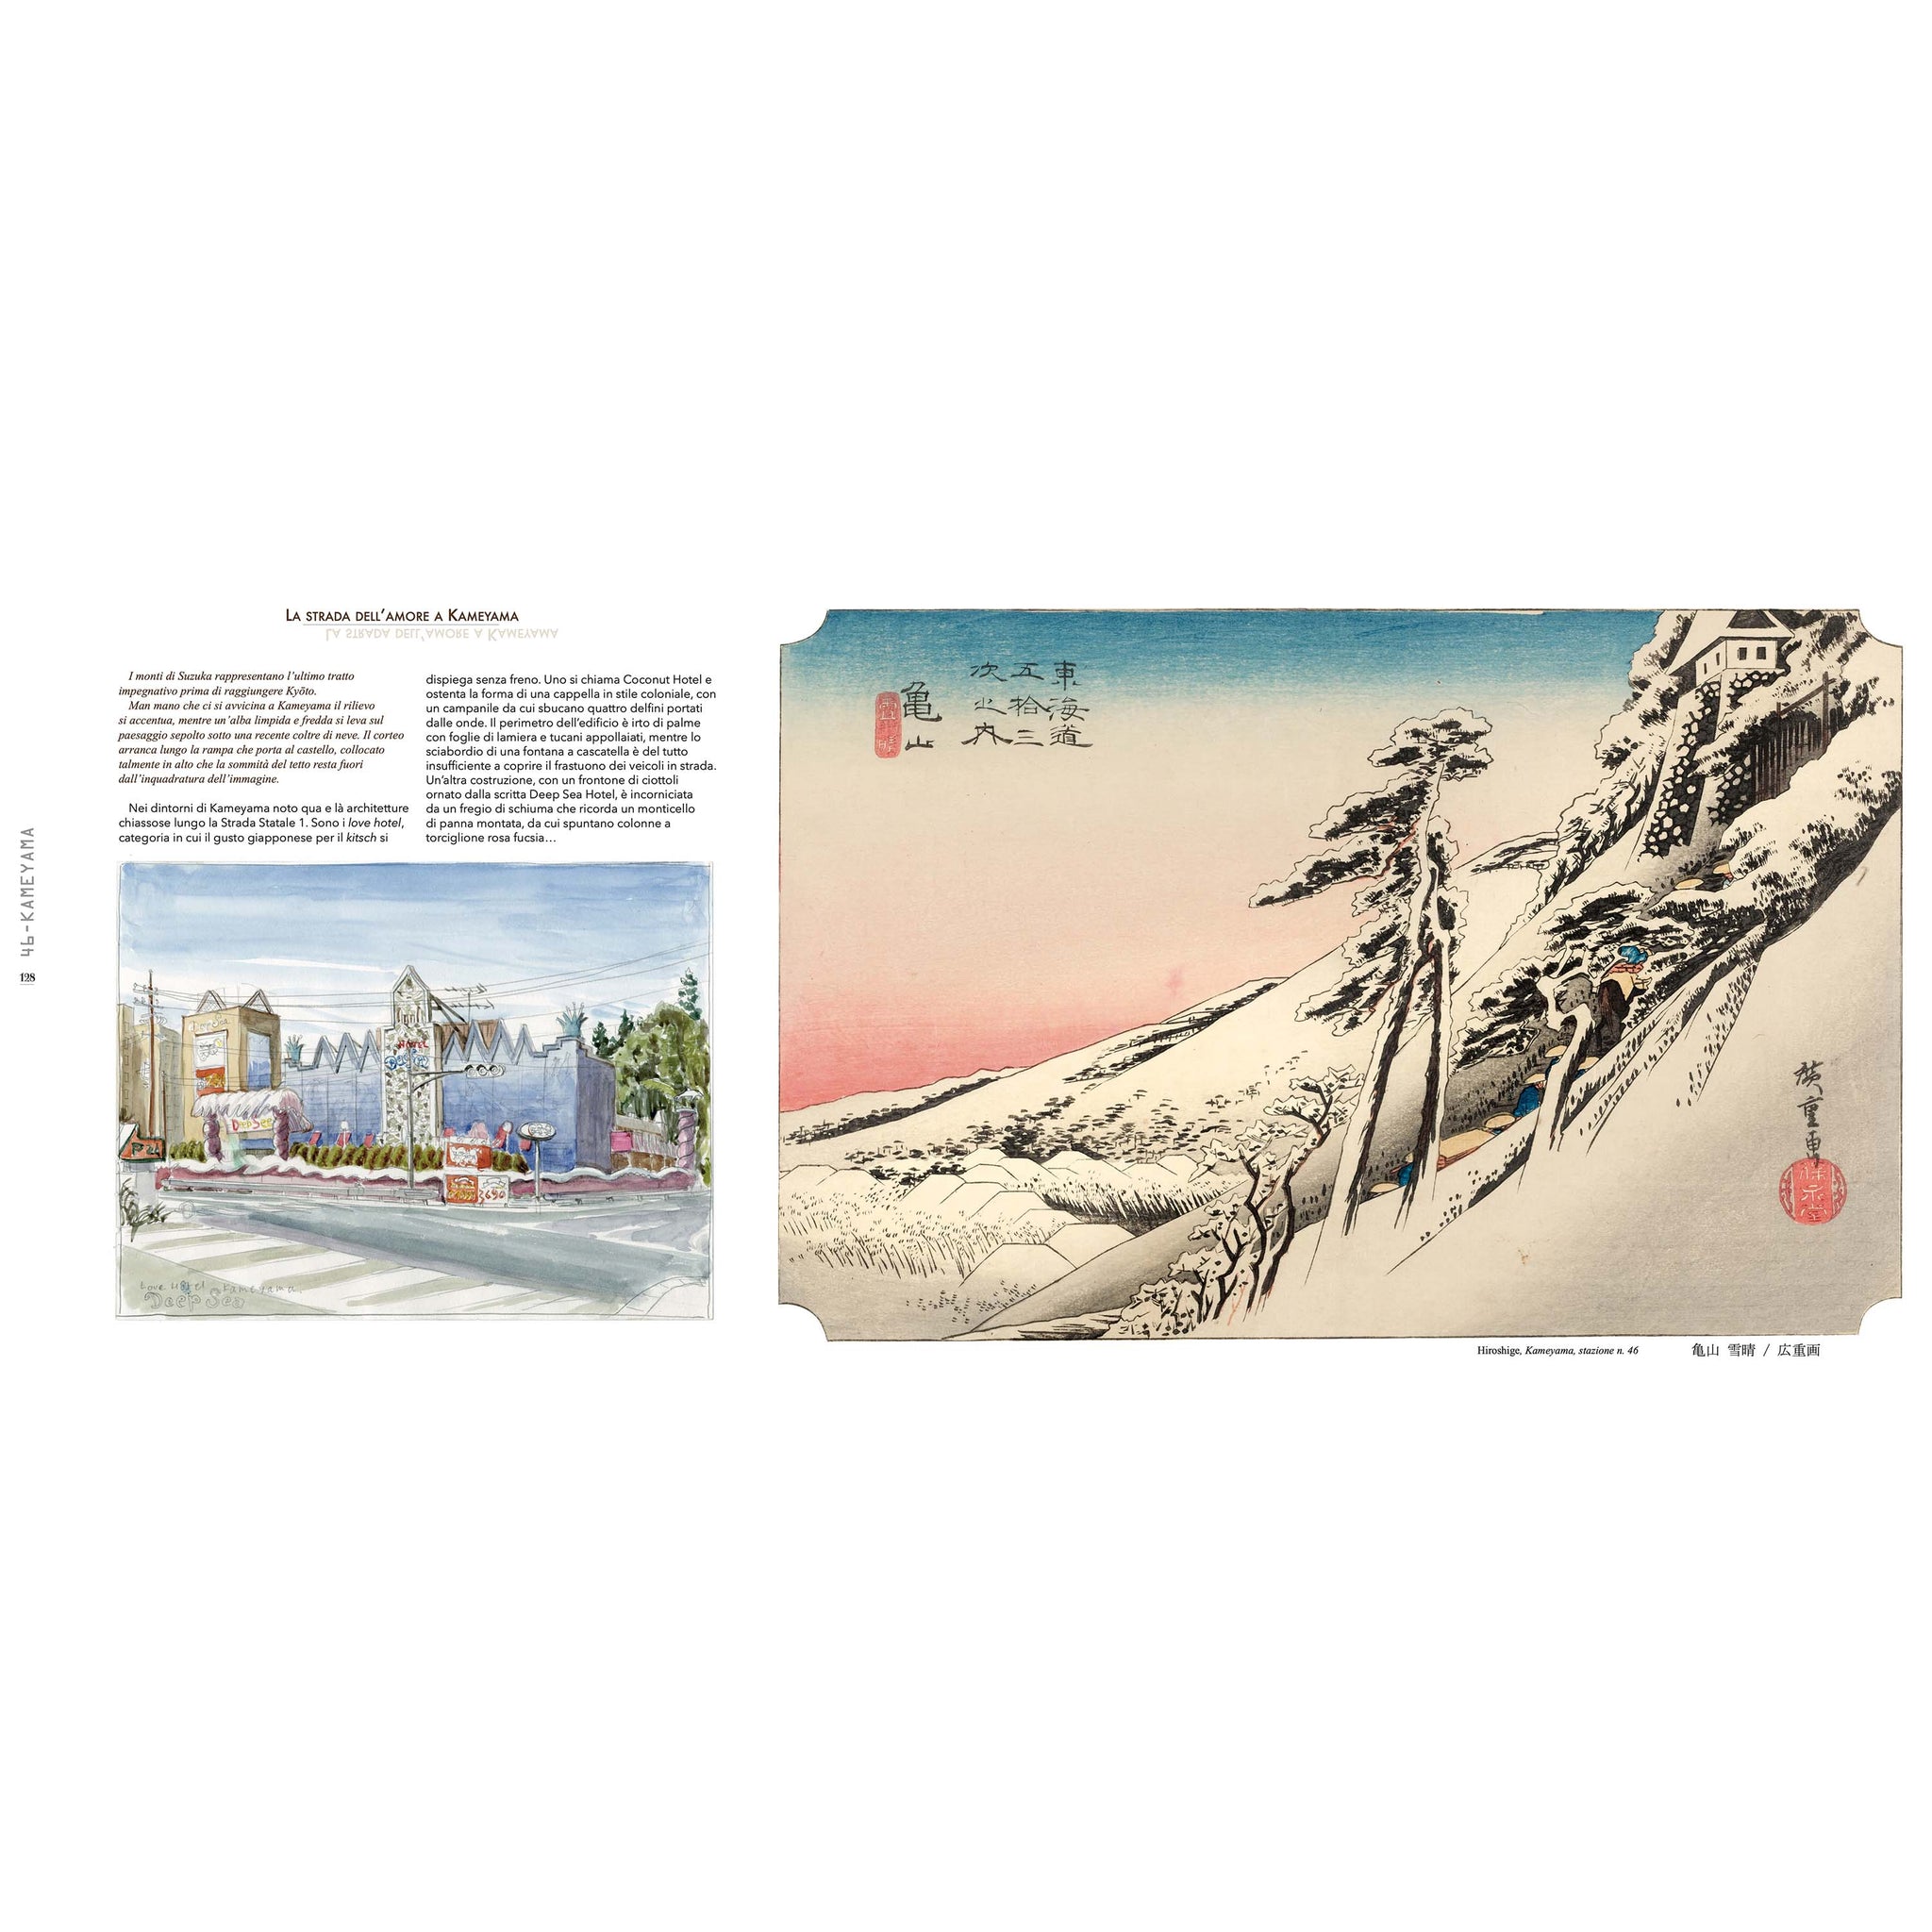 Tōkaidō - An artist's journey to Hiroshige's Japan